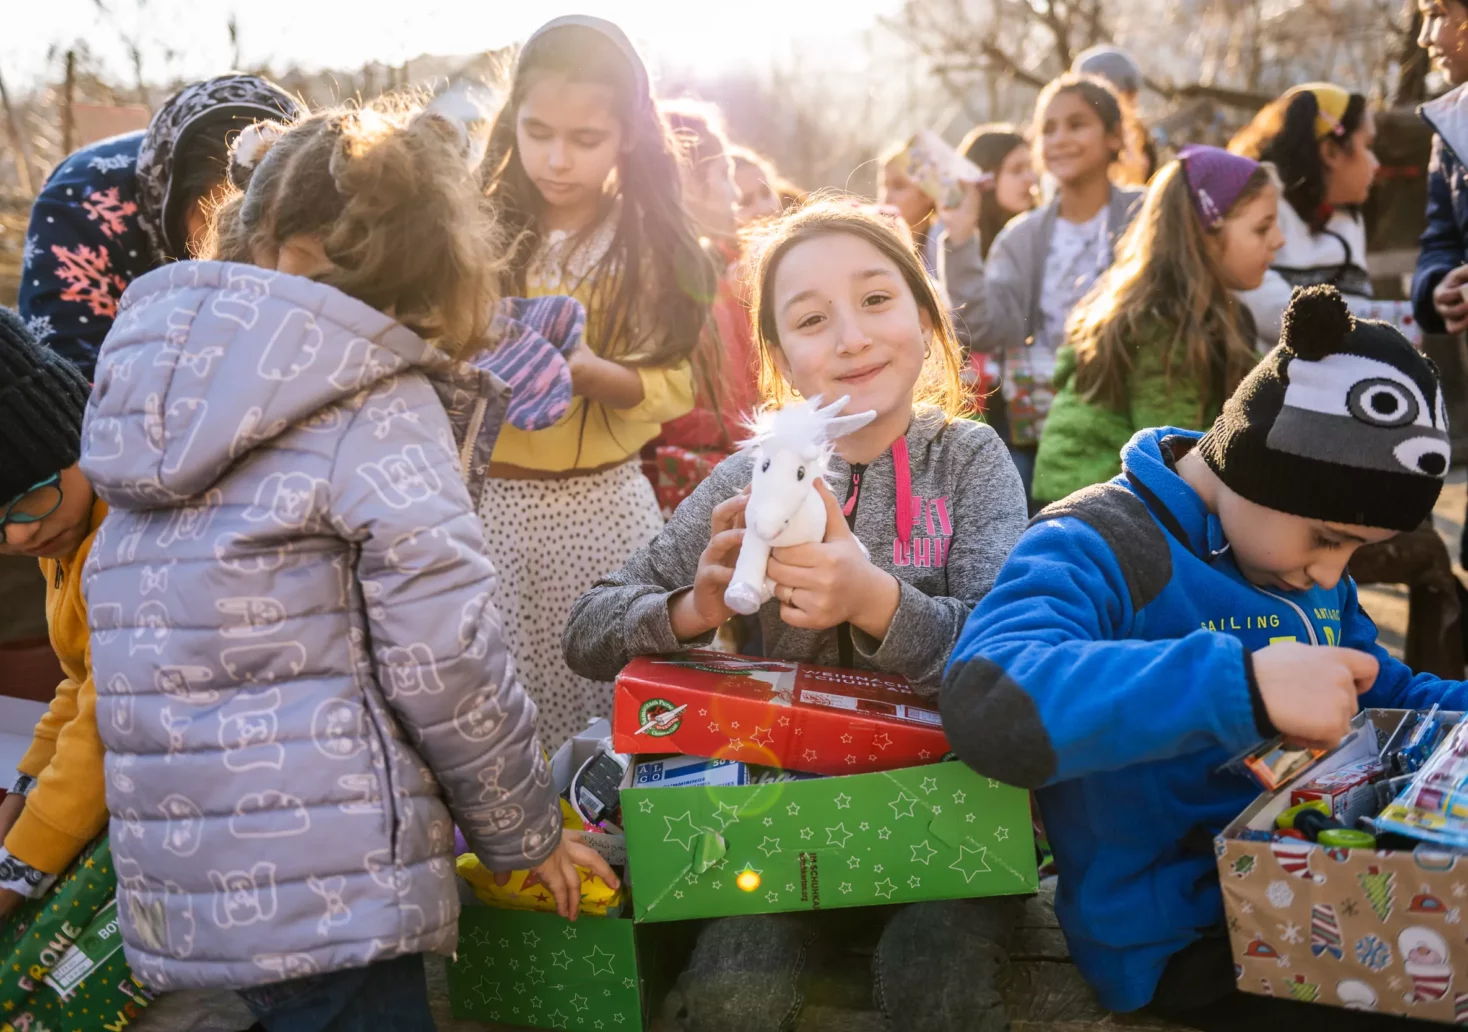 Bild auf 5min.at zeigt mehrere Kinder mit Weihnachtsgeschenken in der Hand.